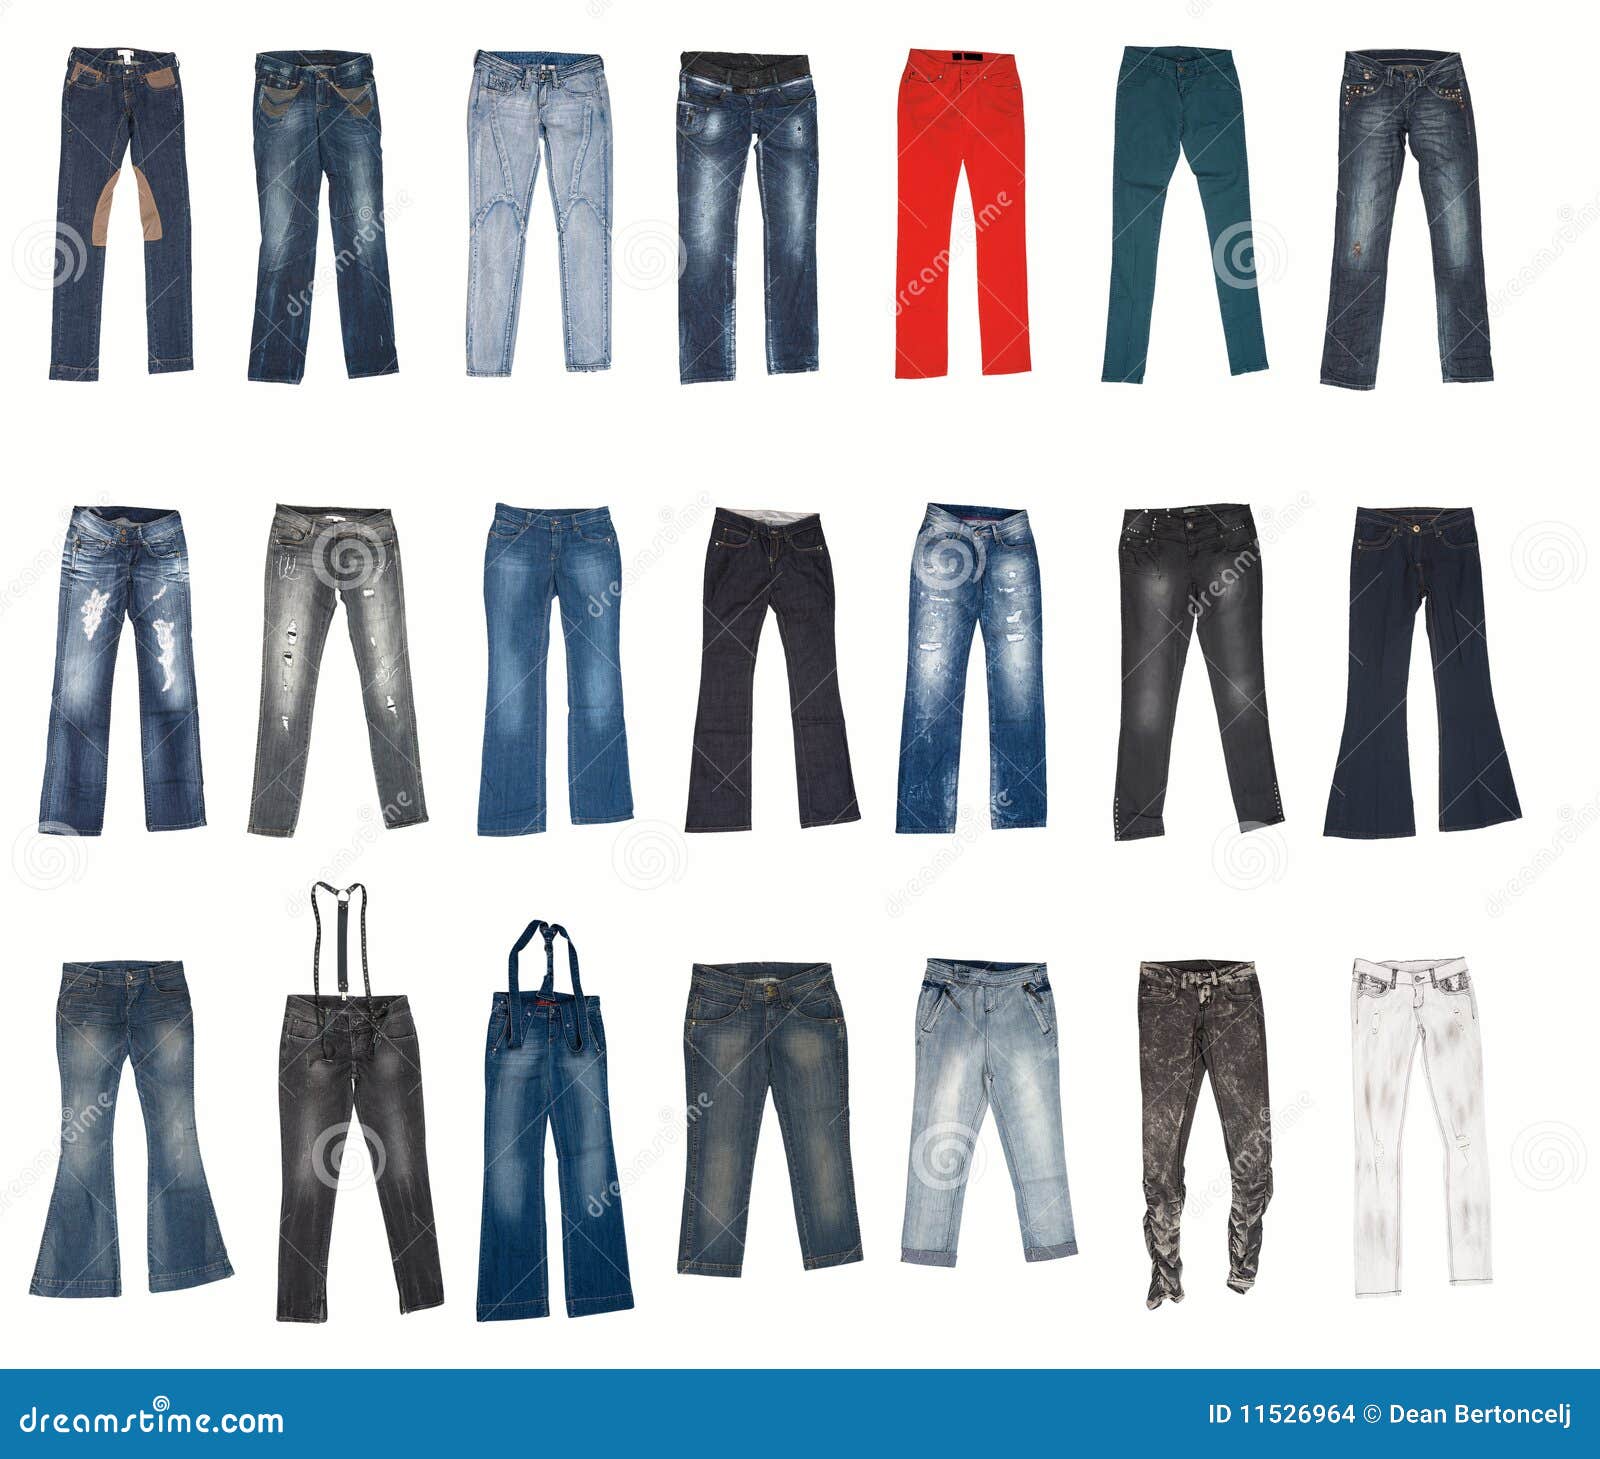 Coraggioso Struttura Rubino tipi di jeans Purtroppo Suffisso Automazione